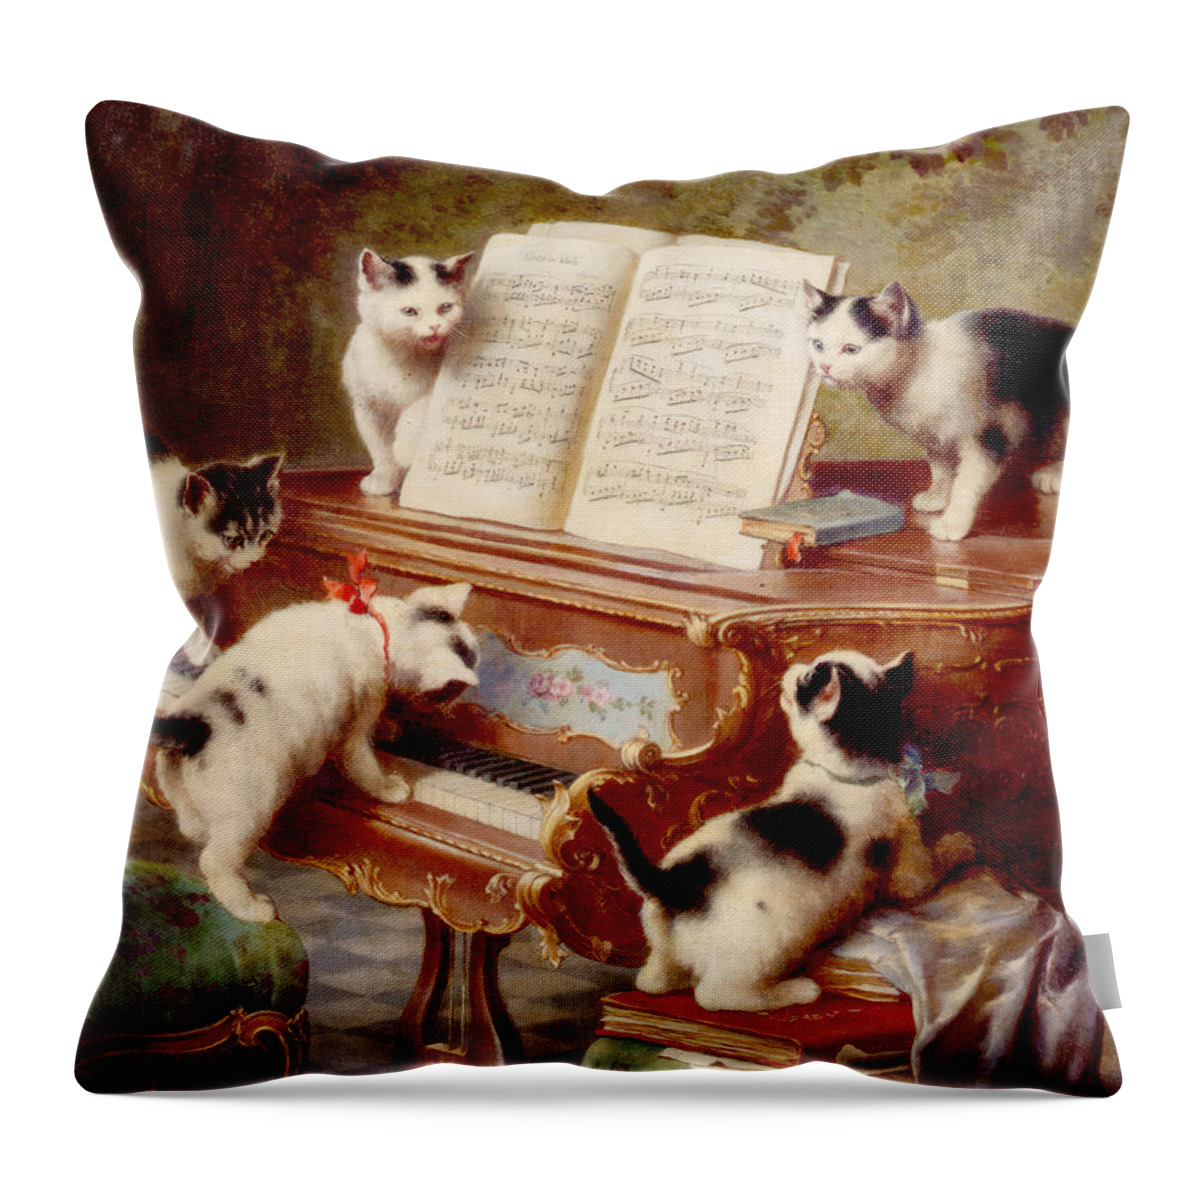 Carl Reichert Throw Pillow featuring the painting The Kittens Recital by Carl Reichert